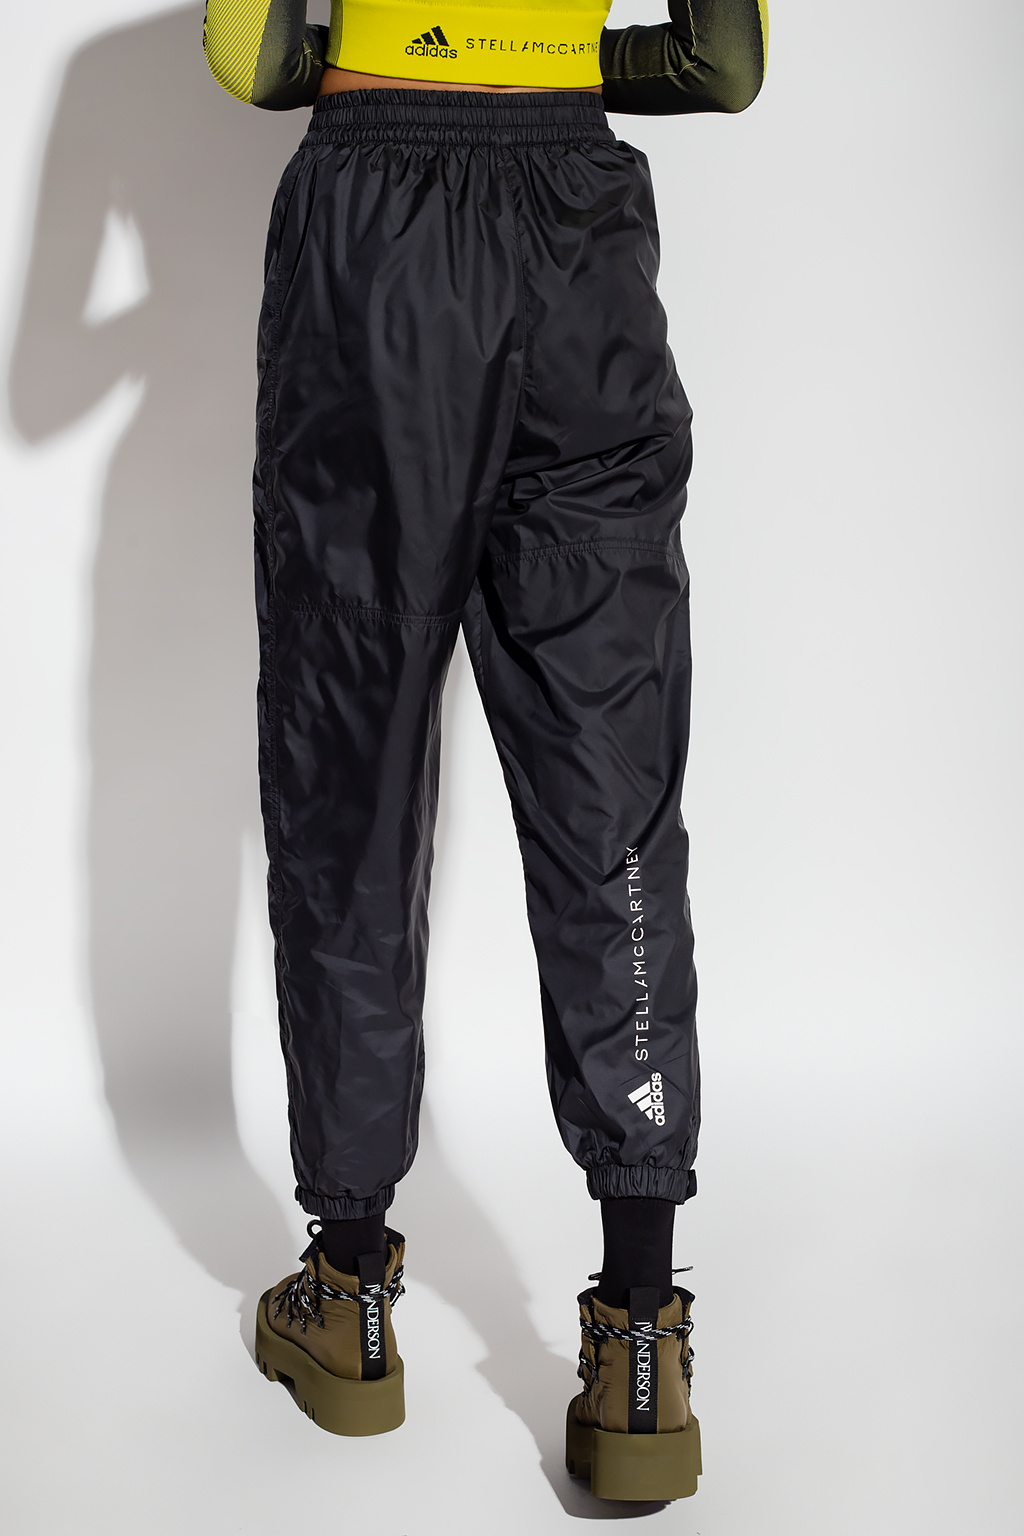 New Adidas Men's Black TS Adizero Track Pants Sz M | Adidas men, New adidas,  Clothes design